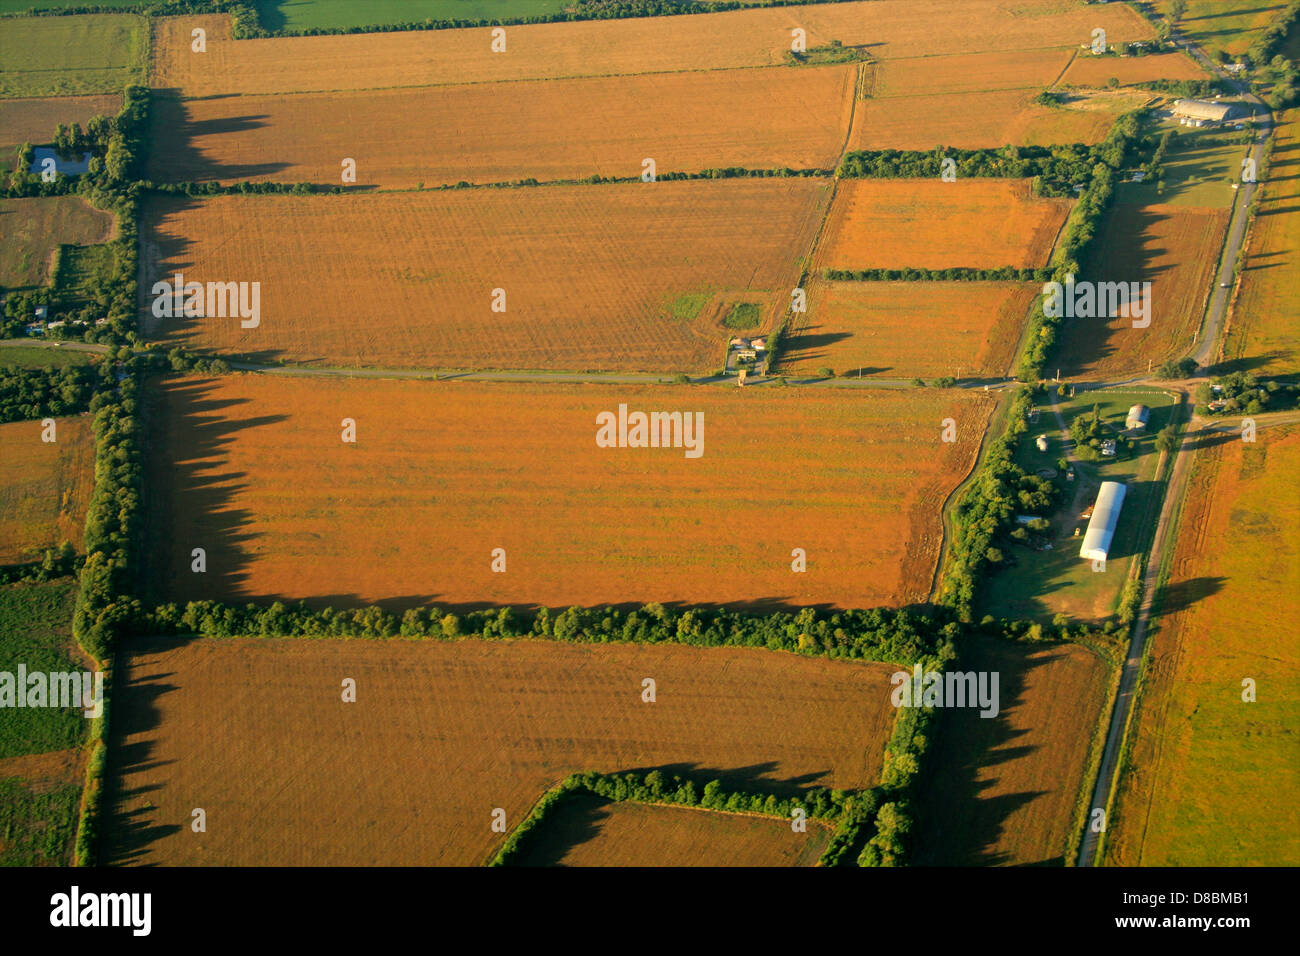 Vista aérea de la finca con un mosaico de tierras cultivadas y plantar cultivos Foto de stock